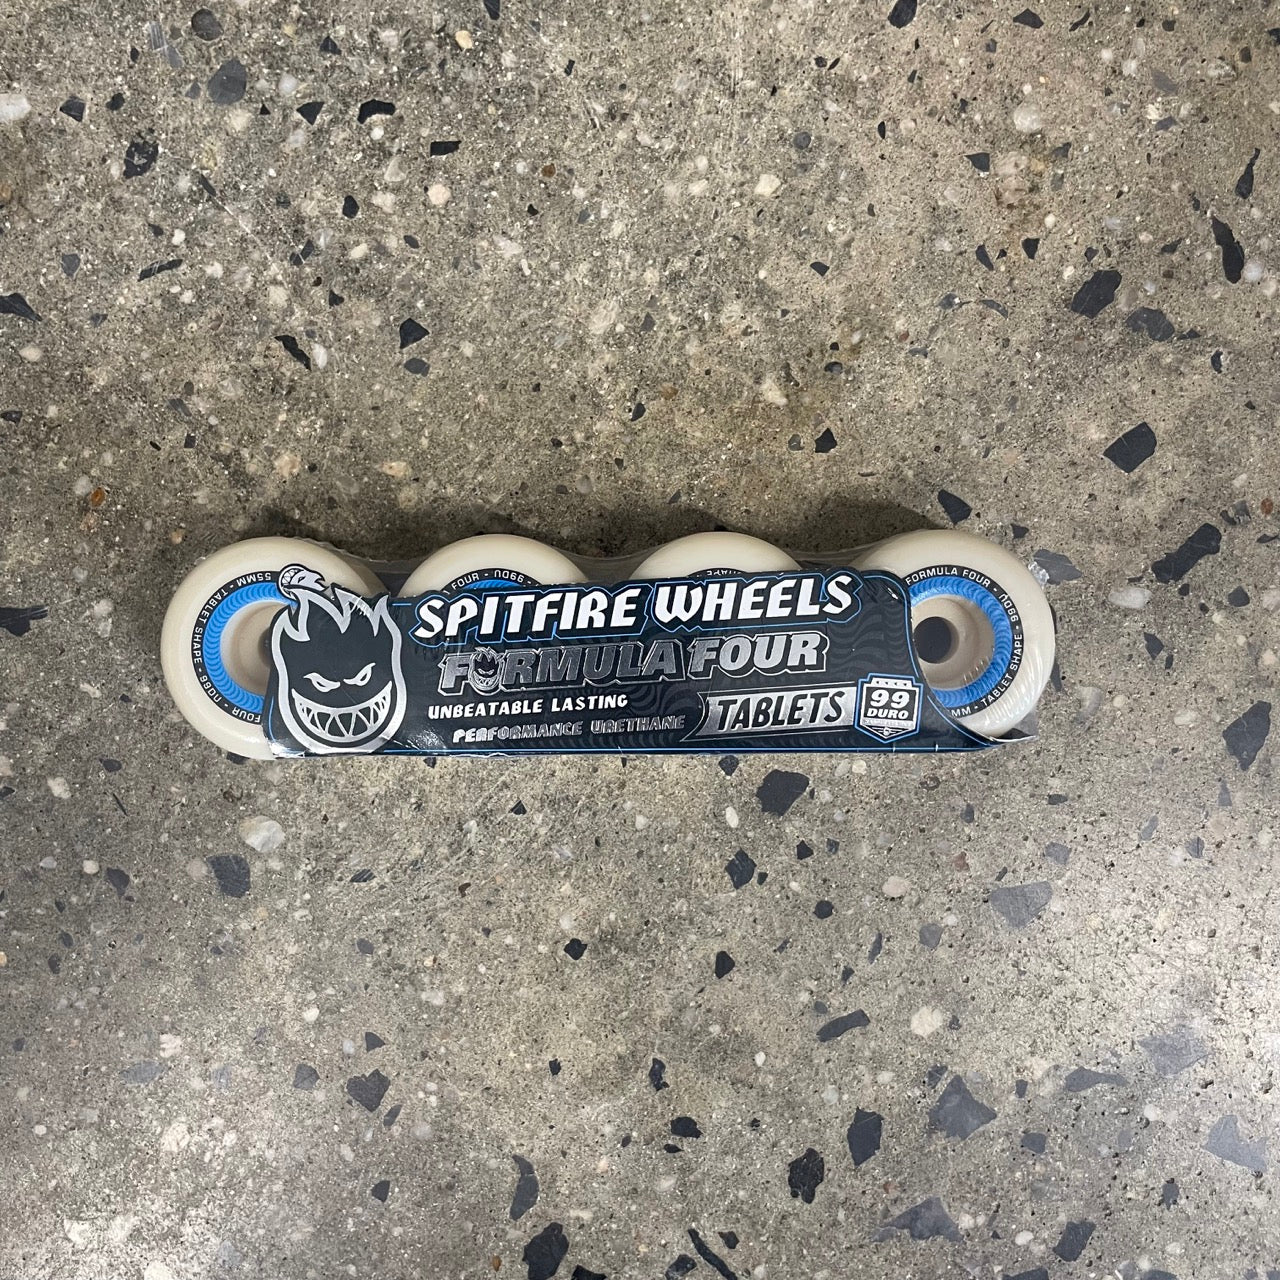 Spitfire Wheels Formula Four Tablets 99D